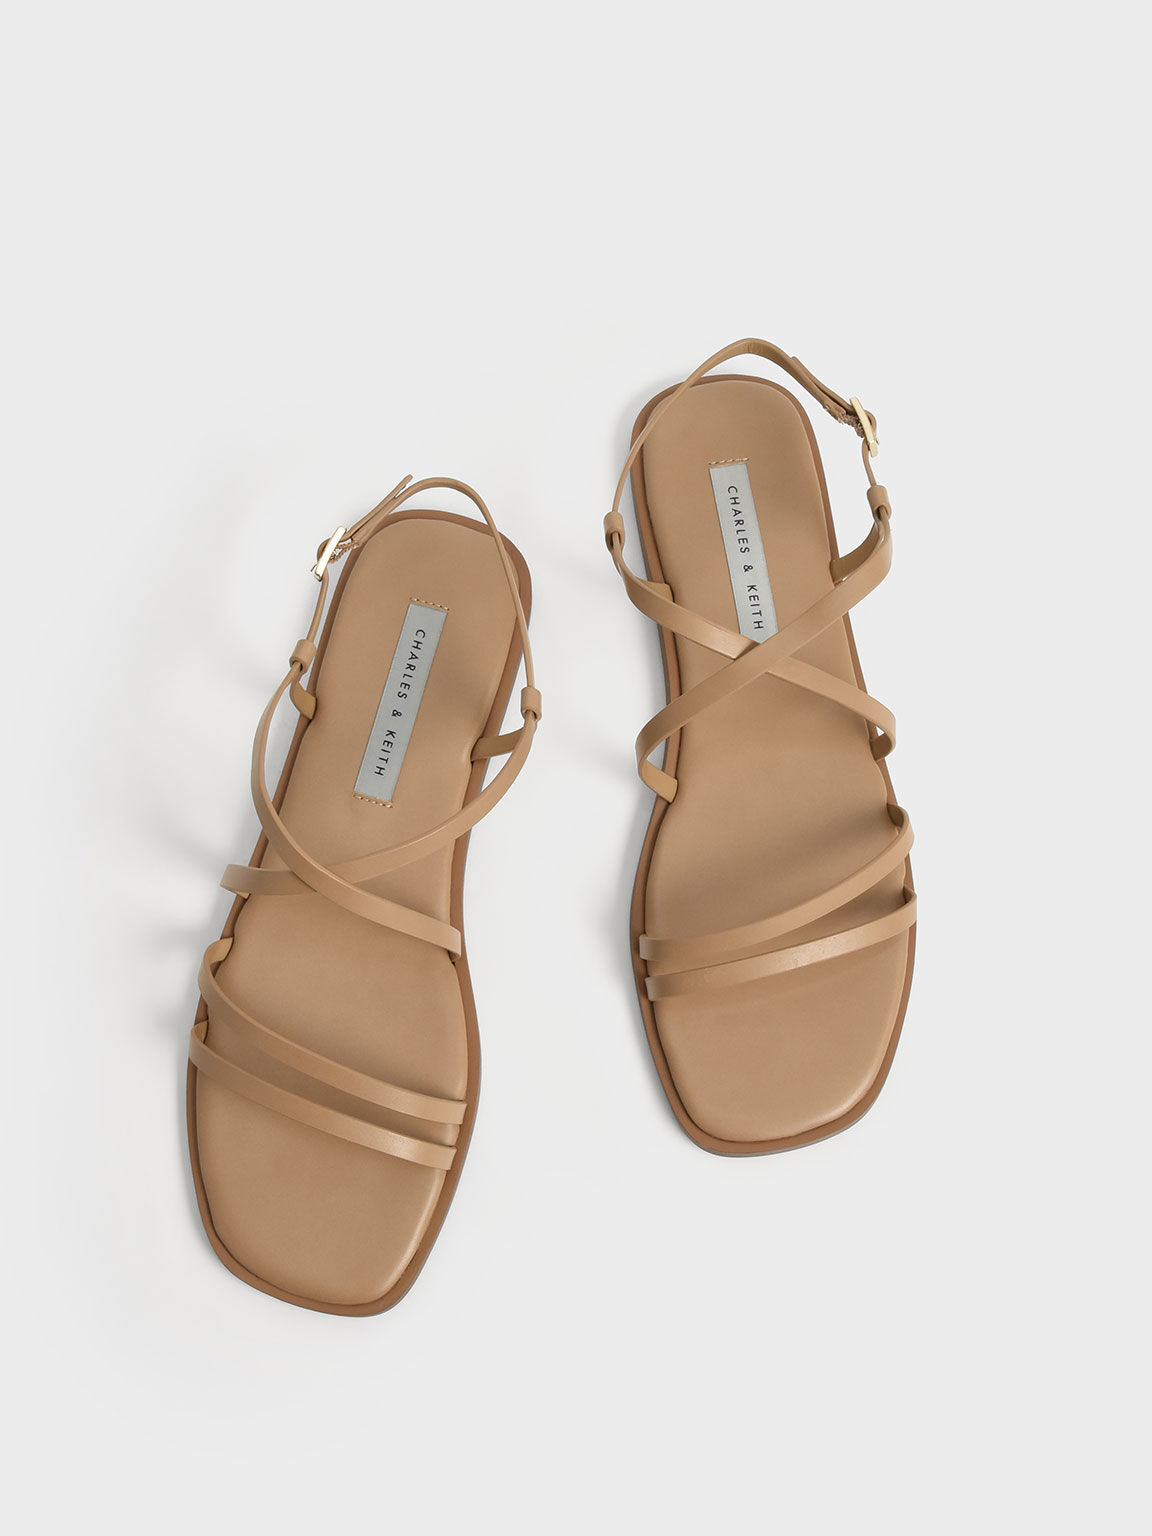 Strappy Flat Sandals, Camel, hi-res